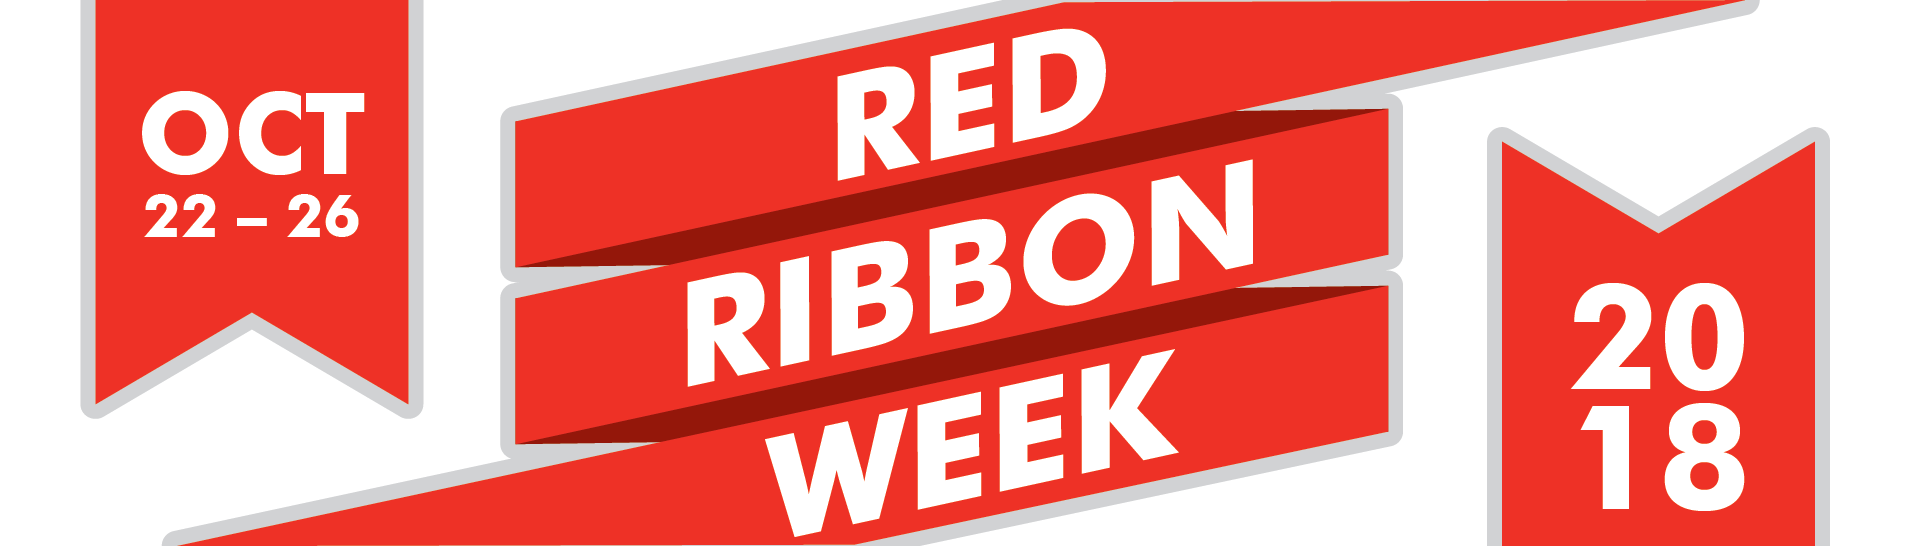 Red Ribbon Week 2018